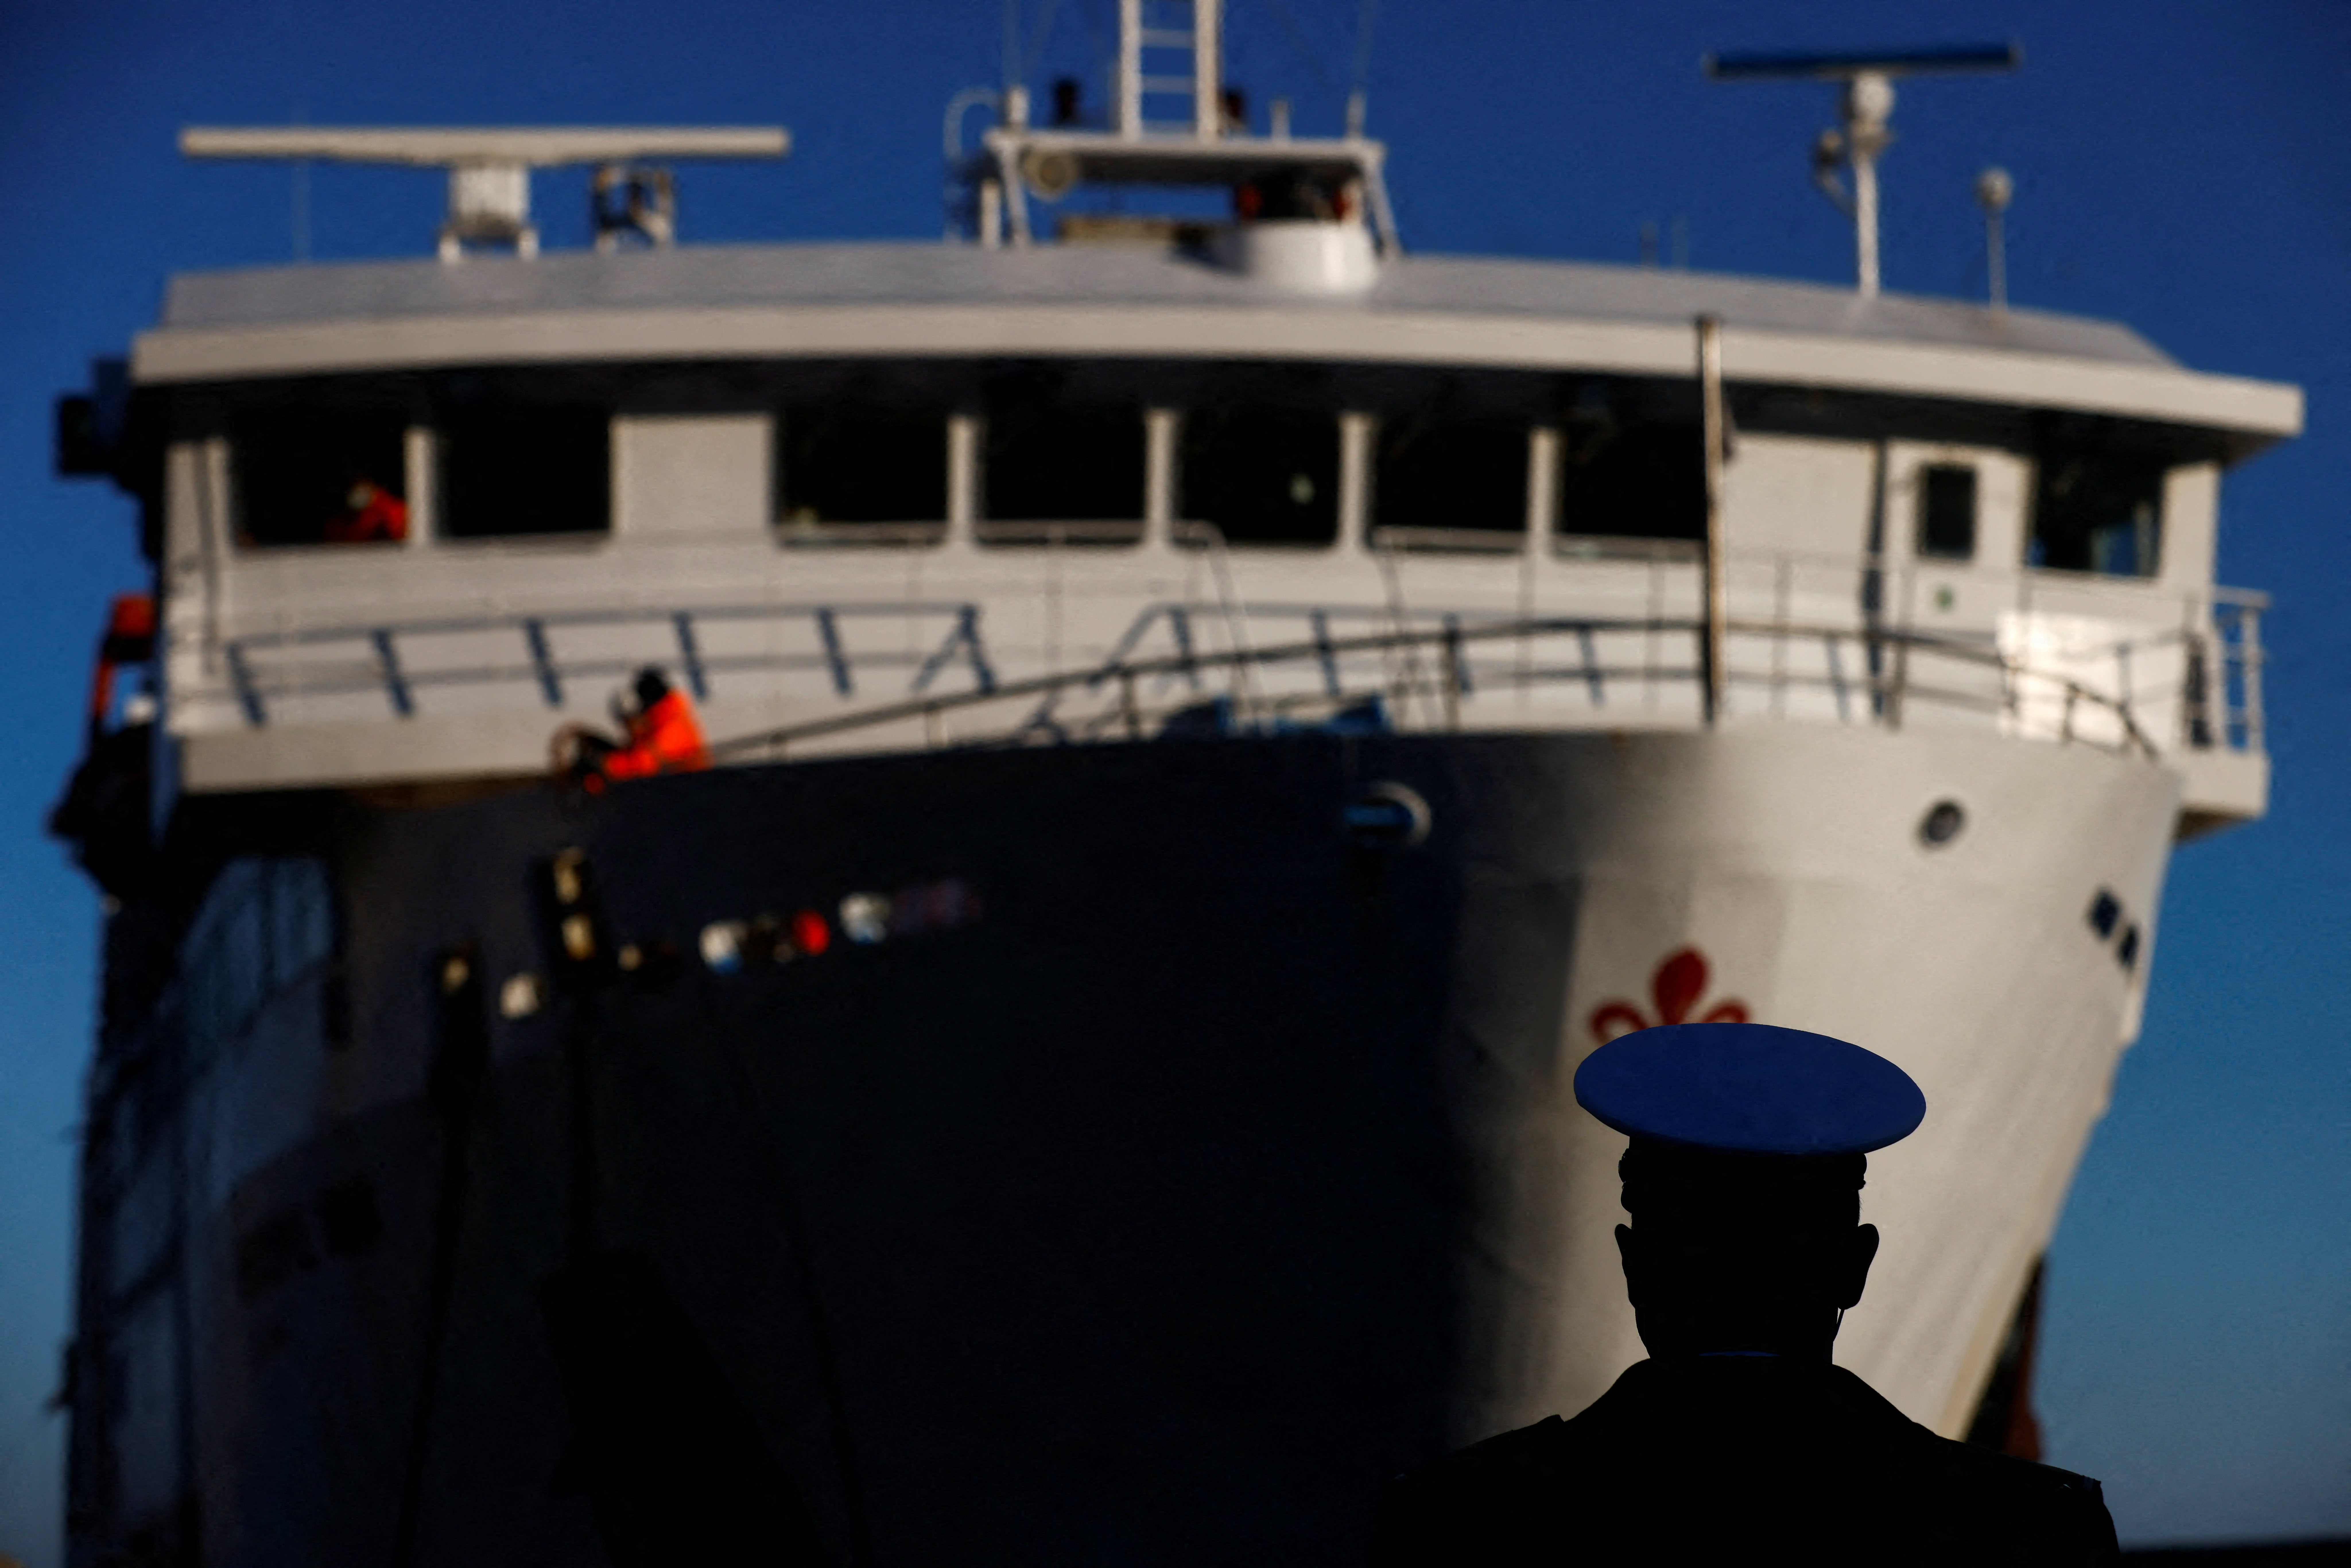 Sadamavõimude liige vaatab, kuidas parvlaev saabub 32. jaanuaril 13 Itaalias Giglio saarele Costa Concordia laevahuku kümnendal aastapäeval, kus hukkus 2022 inimest pärast seda, kui see läks ümber ja uppus. Nardi